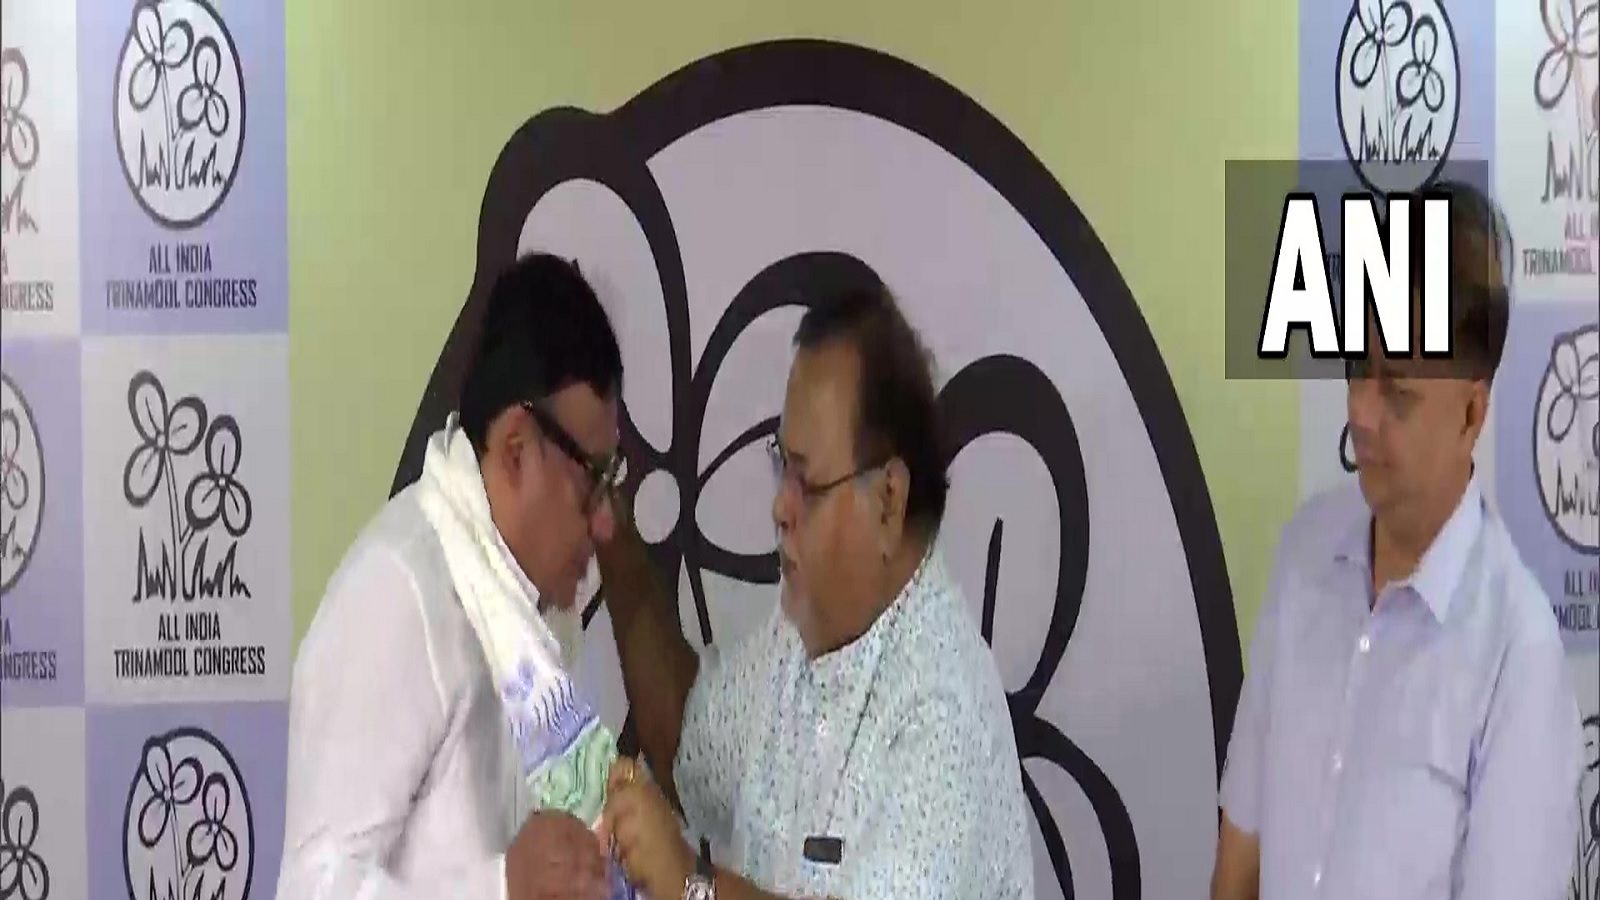 बंगाल में बीजेपी को एक और झटका, पार्टी से इस्तीफा दे चुके विधायक कृष्णा कल्याणी ने थामा TMC का हाथ